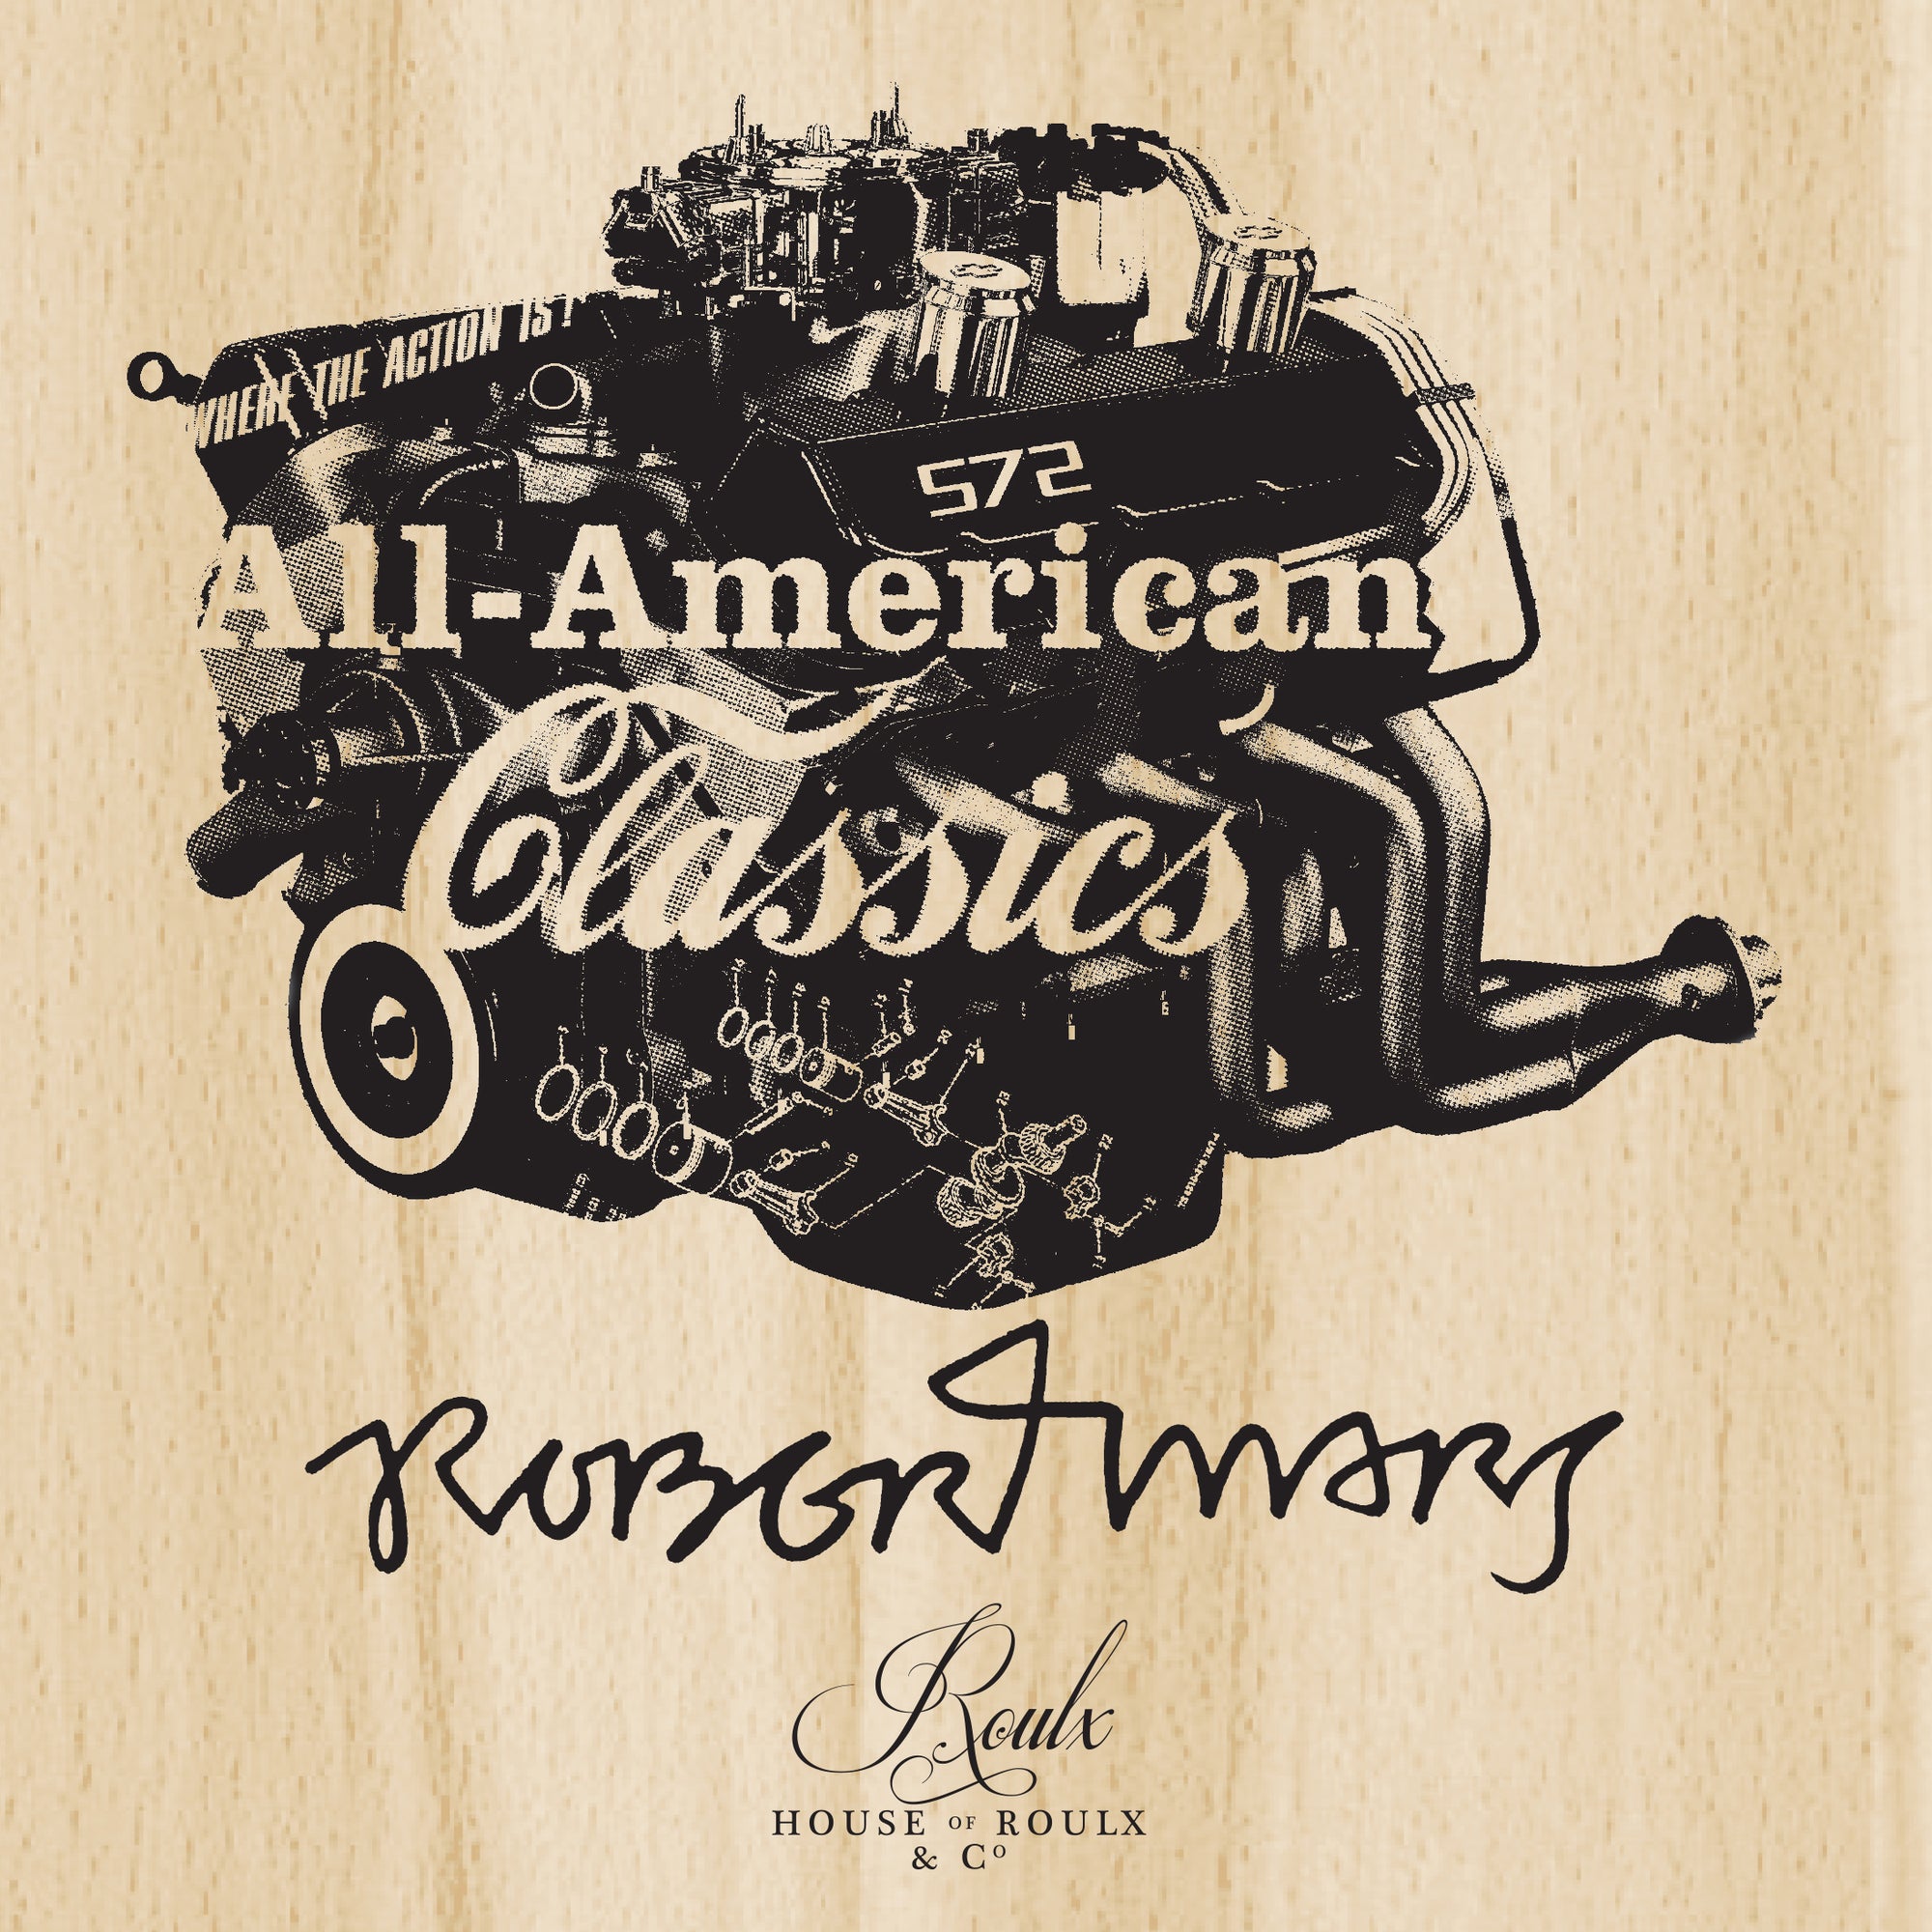 Robert Mars: "All American Classics" - Skate Decks & Originals - 4/19/23